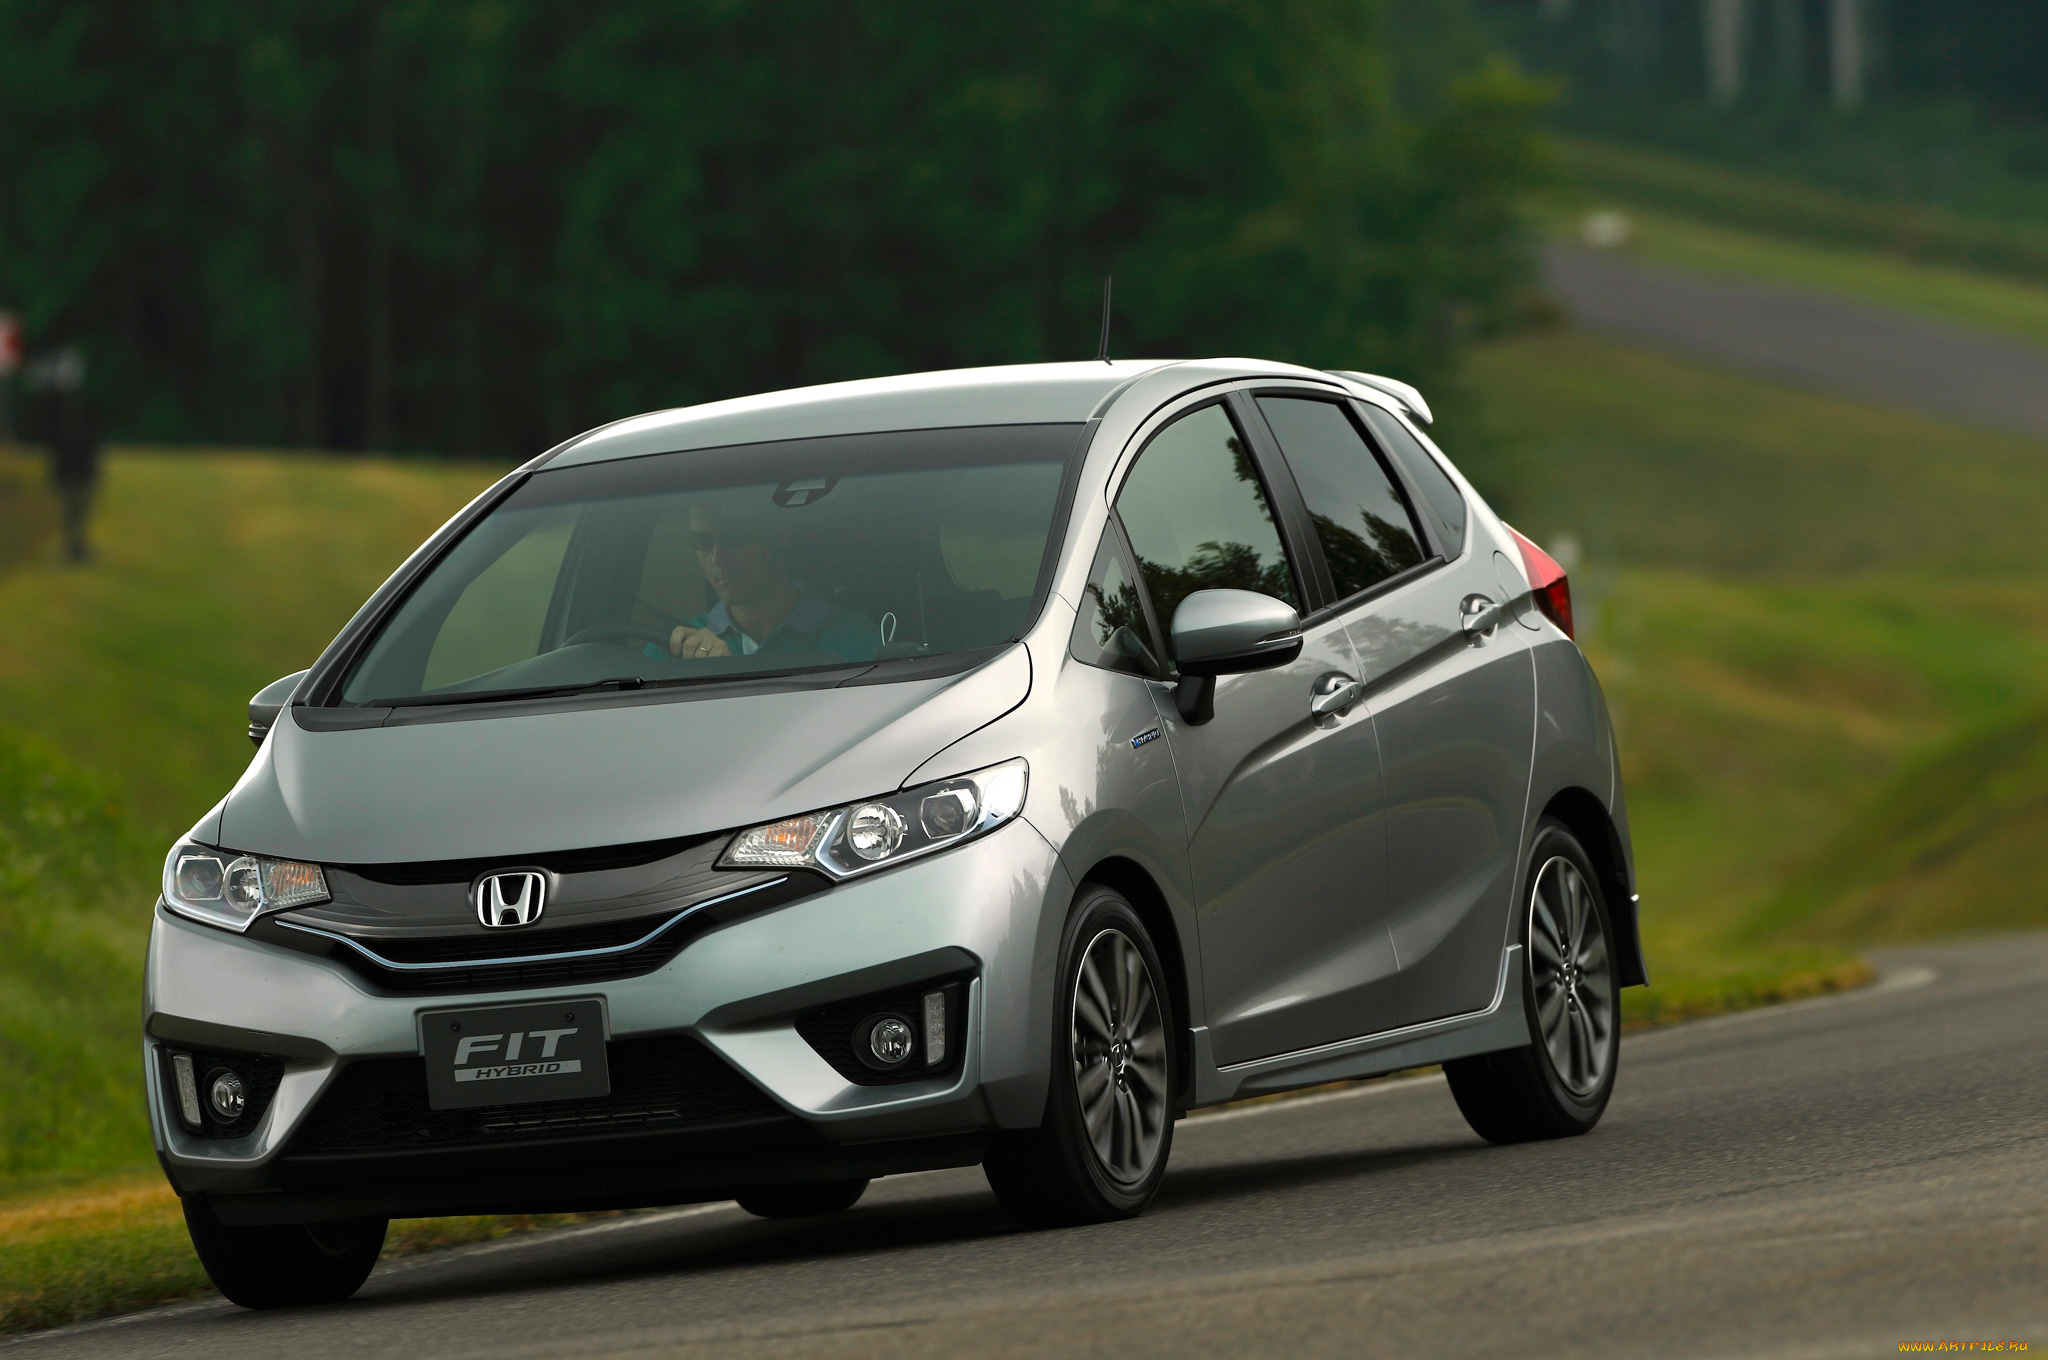 Honda старт. Хонда фит 2015 гибрид. Honda Fit 2013 Hybrid. Хонда фит 3 поколения. Honda Fit 2015 LX.